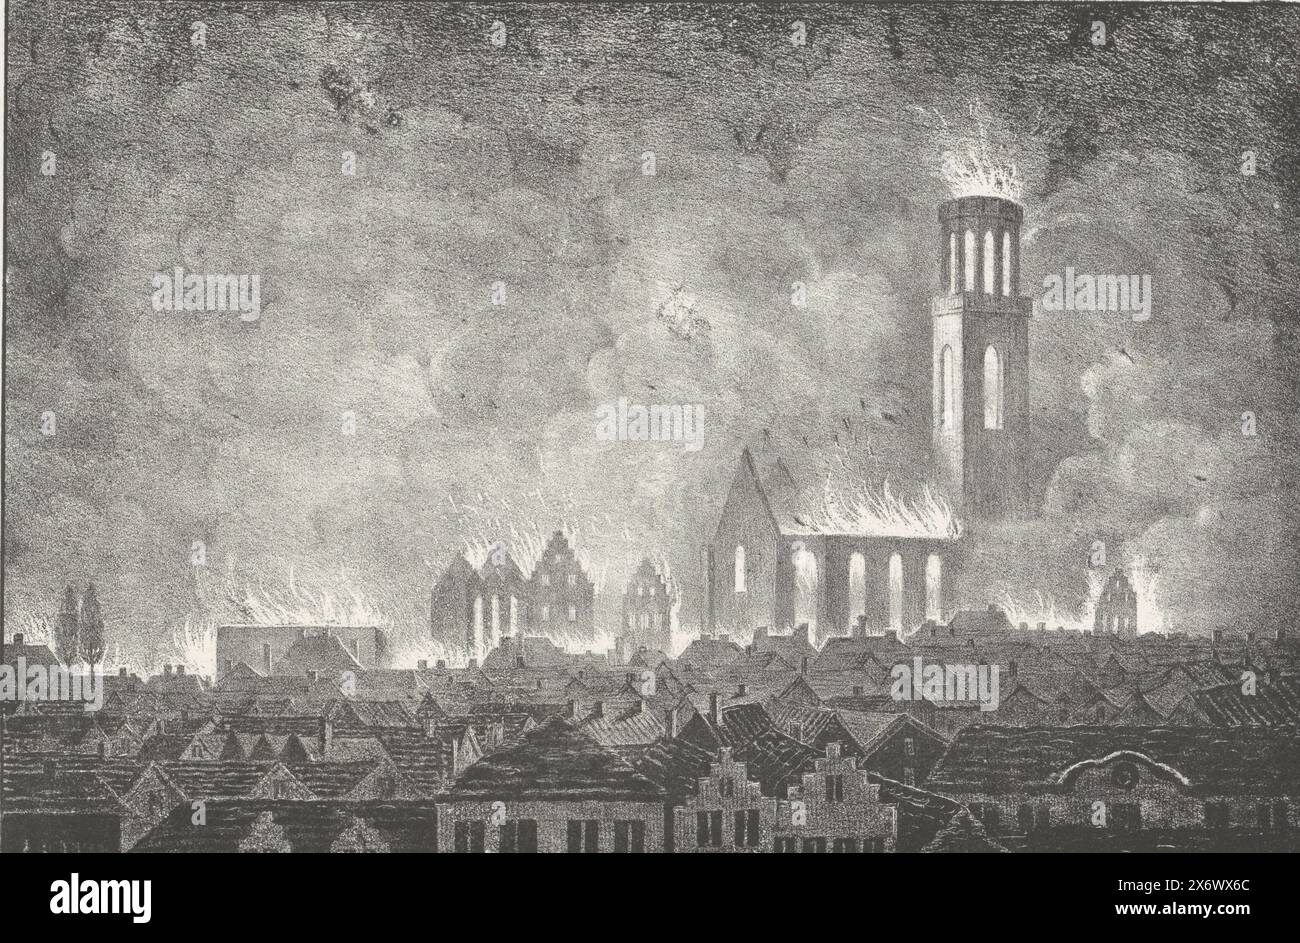 Entrepot on Fire, 1830, vue de l'Entrepôt d'Anvers. au moment de l'incendie fait par le bombardement dans la nuit du 27 au 28 8.bre 1830 (titre sur objet), dix-neuf planches des combats à Anvers, 26 au 27 octobre 1830 (titre de la série), incendie dans un quartier d'Anvers. L'entrepot et l'abbaye de Michael prennent feu lors du bombardement d'Anvers le 27 octobre 1830. Fait partie d'une série de dix-neuf planches des combats à Anvers, du 26 au 27 octobre 1830., imprimeur, imprimeur : J.J. Cöntgen, (mentionné sur l'objet), imprimeur : Henry Ratinckx, (mentionné sur l'objet), imprimeur : Belgique, imprimante Banque D'Images